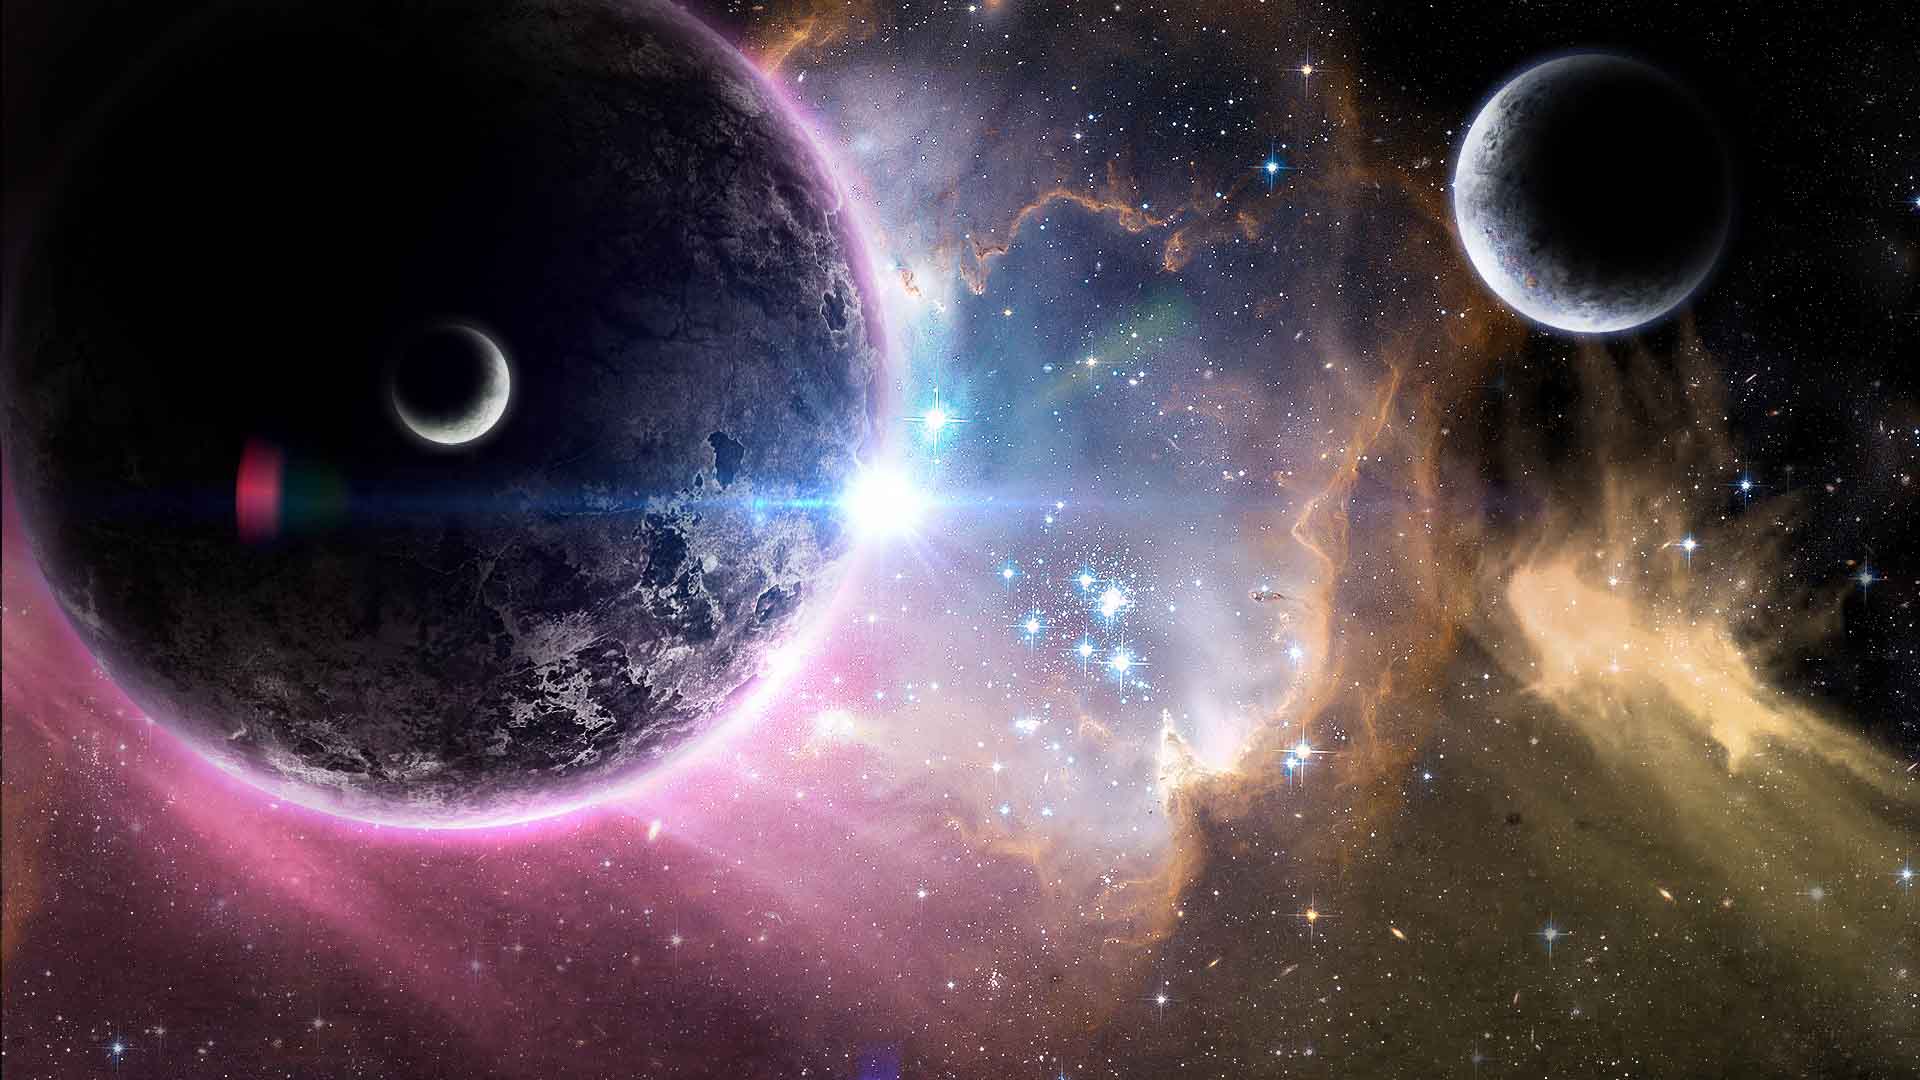 Indagaciones de expertos en el área de la astronomía han permitido entender nuevos mundos. Estos son algunos de los inverosímiles descubrimientos.